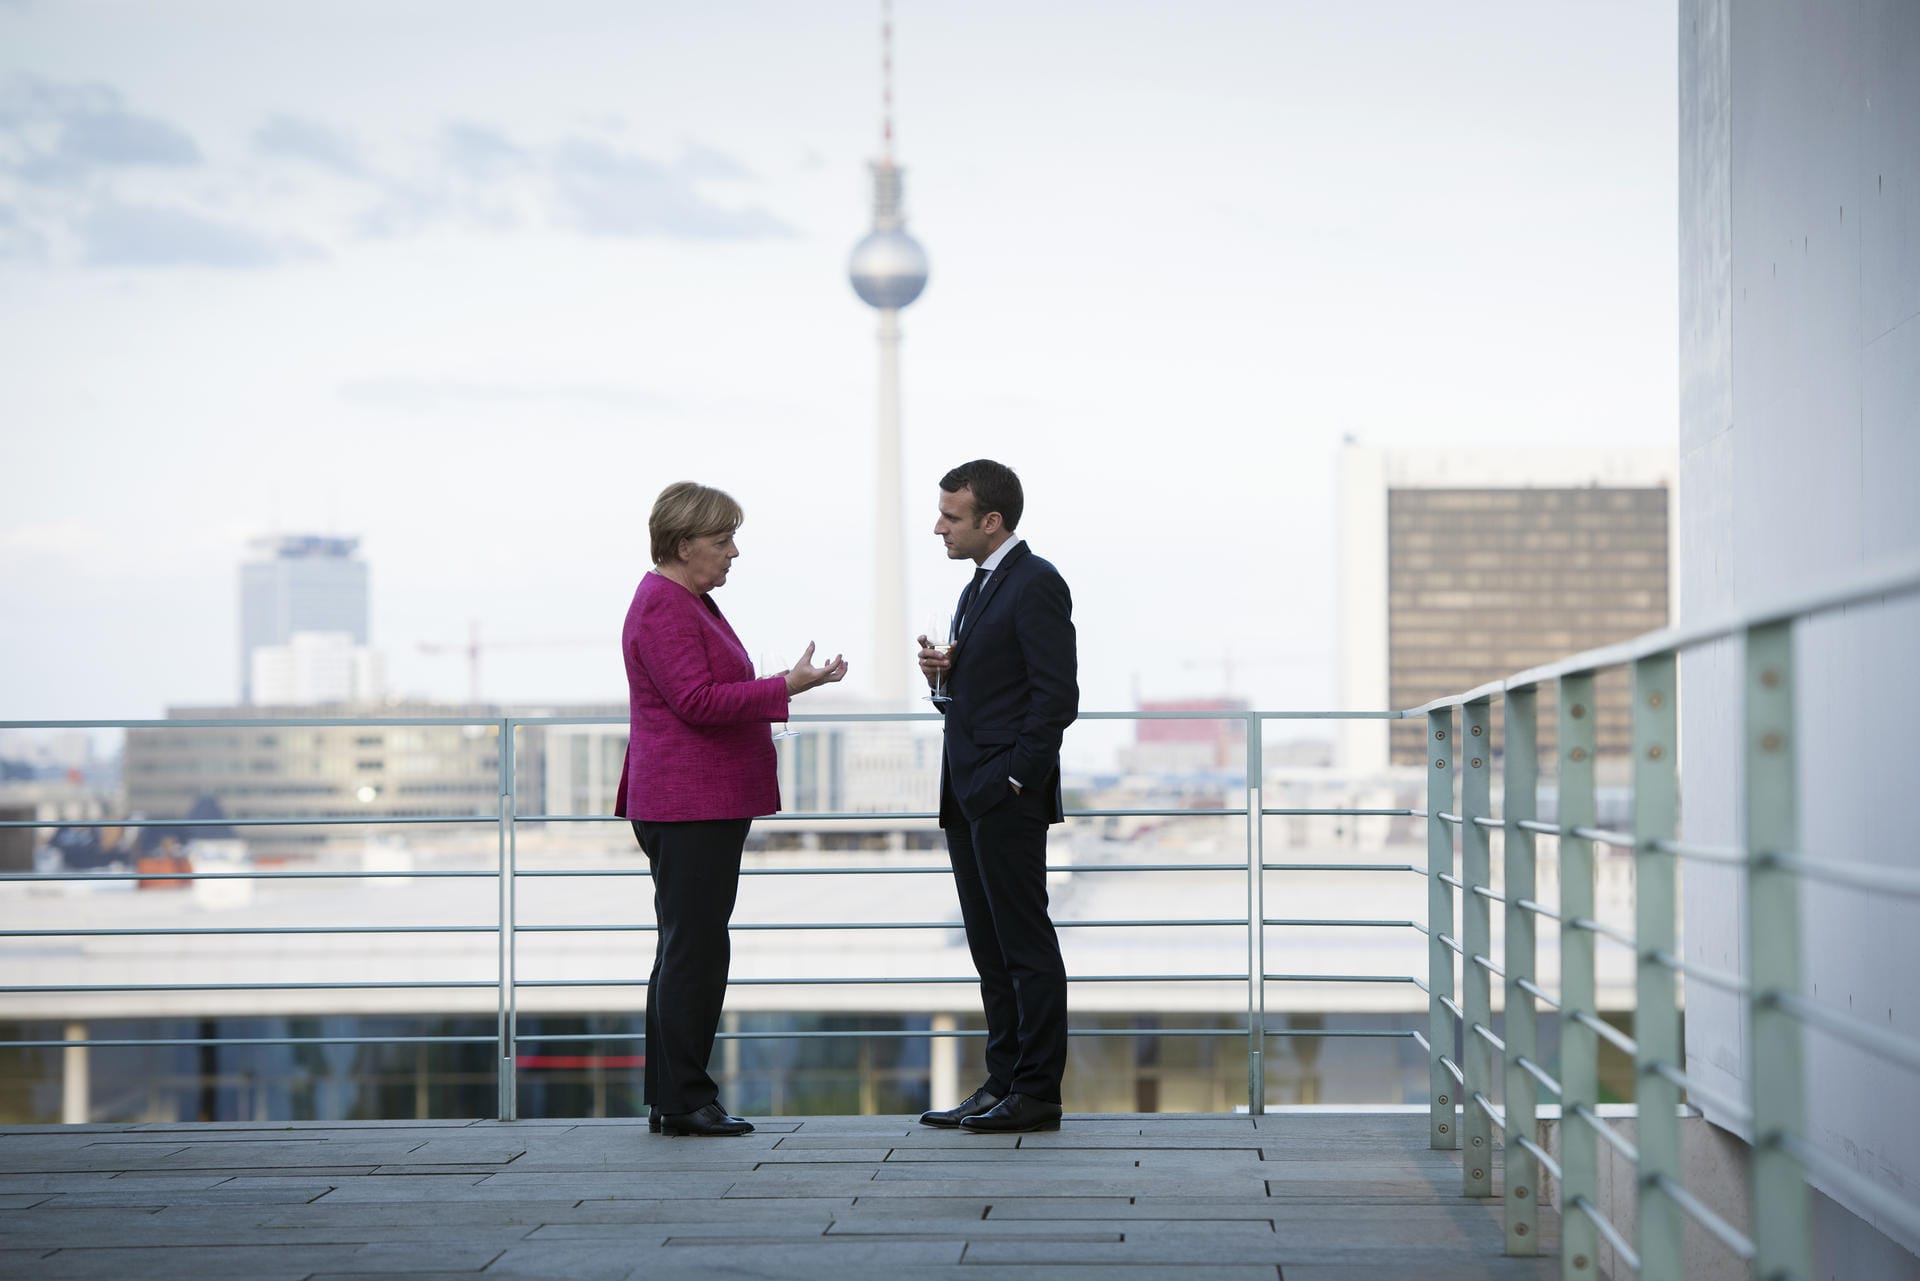 Sektempfang auf der Terrasse des Bundeskanzleramtes in Berlin: Macron erstattet Merkel im Mai 2017 einen Besuch – wenige Tage zuvor wurde er Präsident Frankreichs.